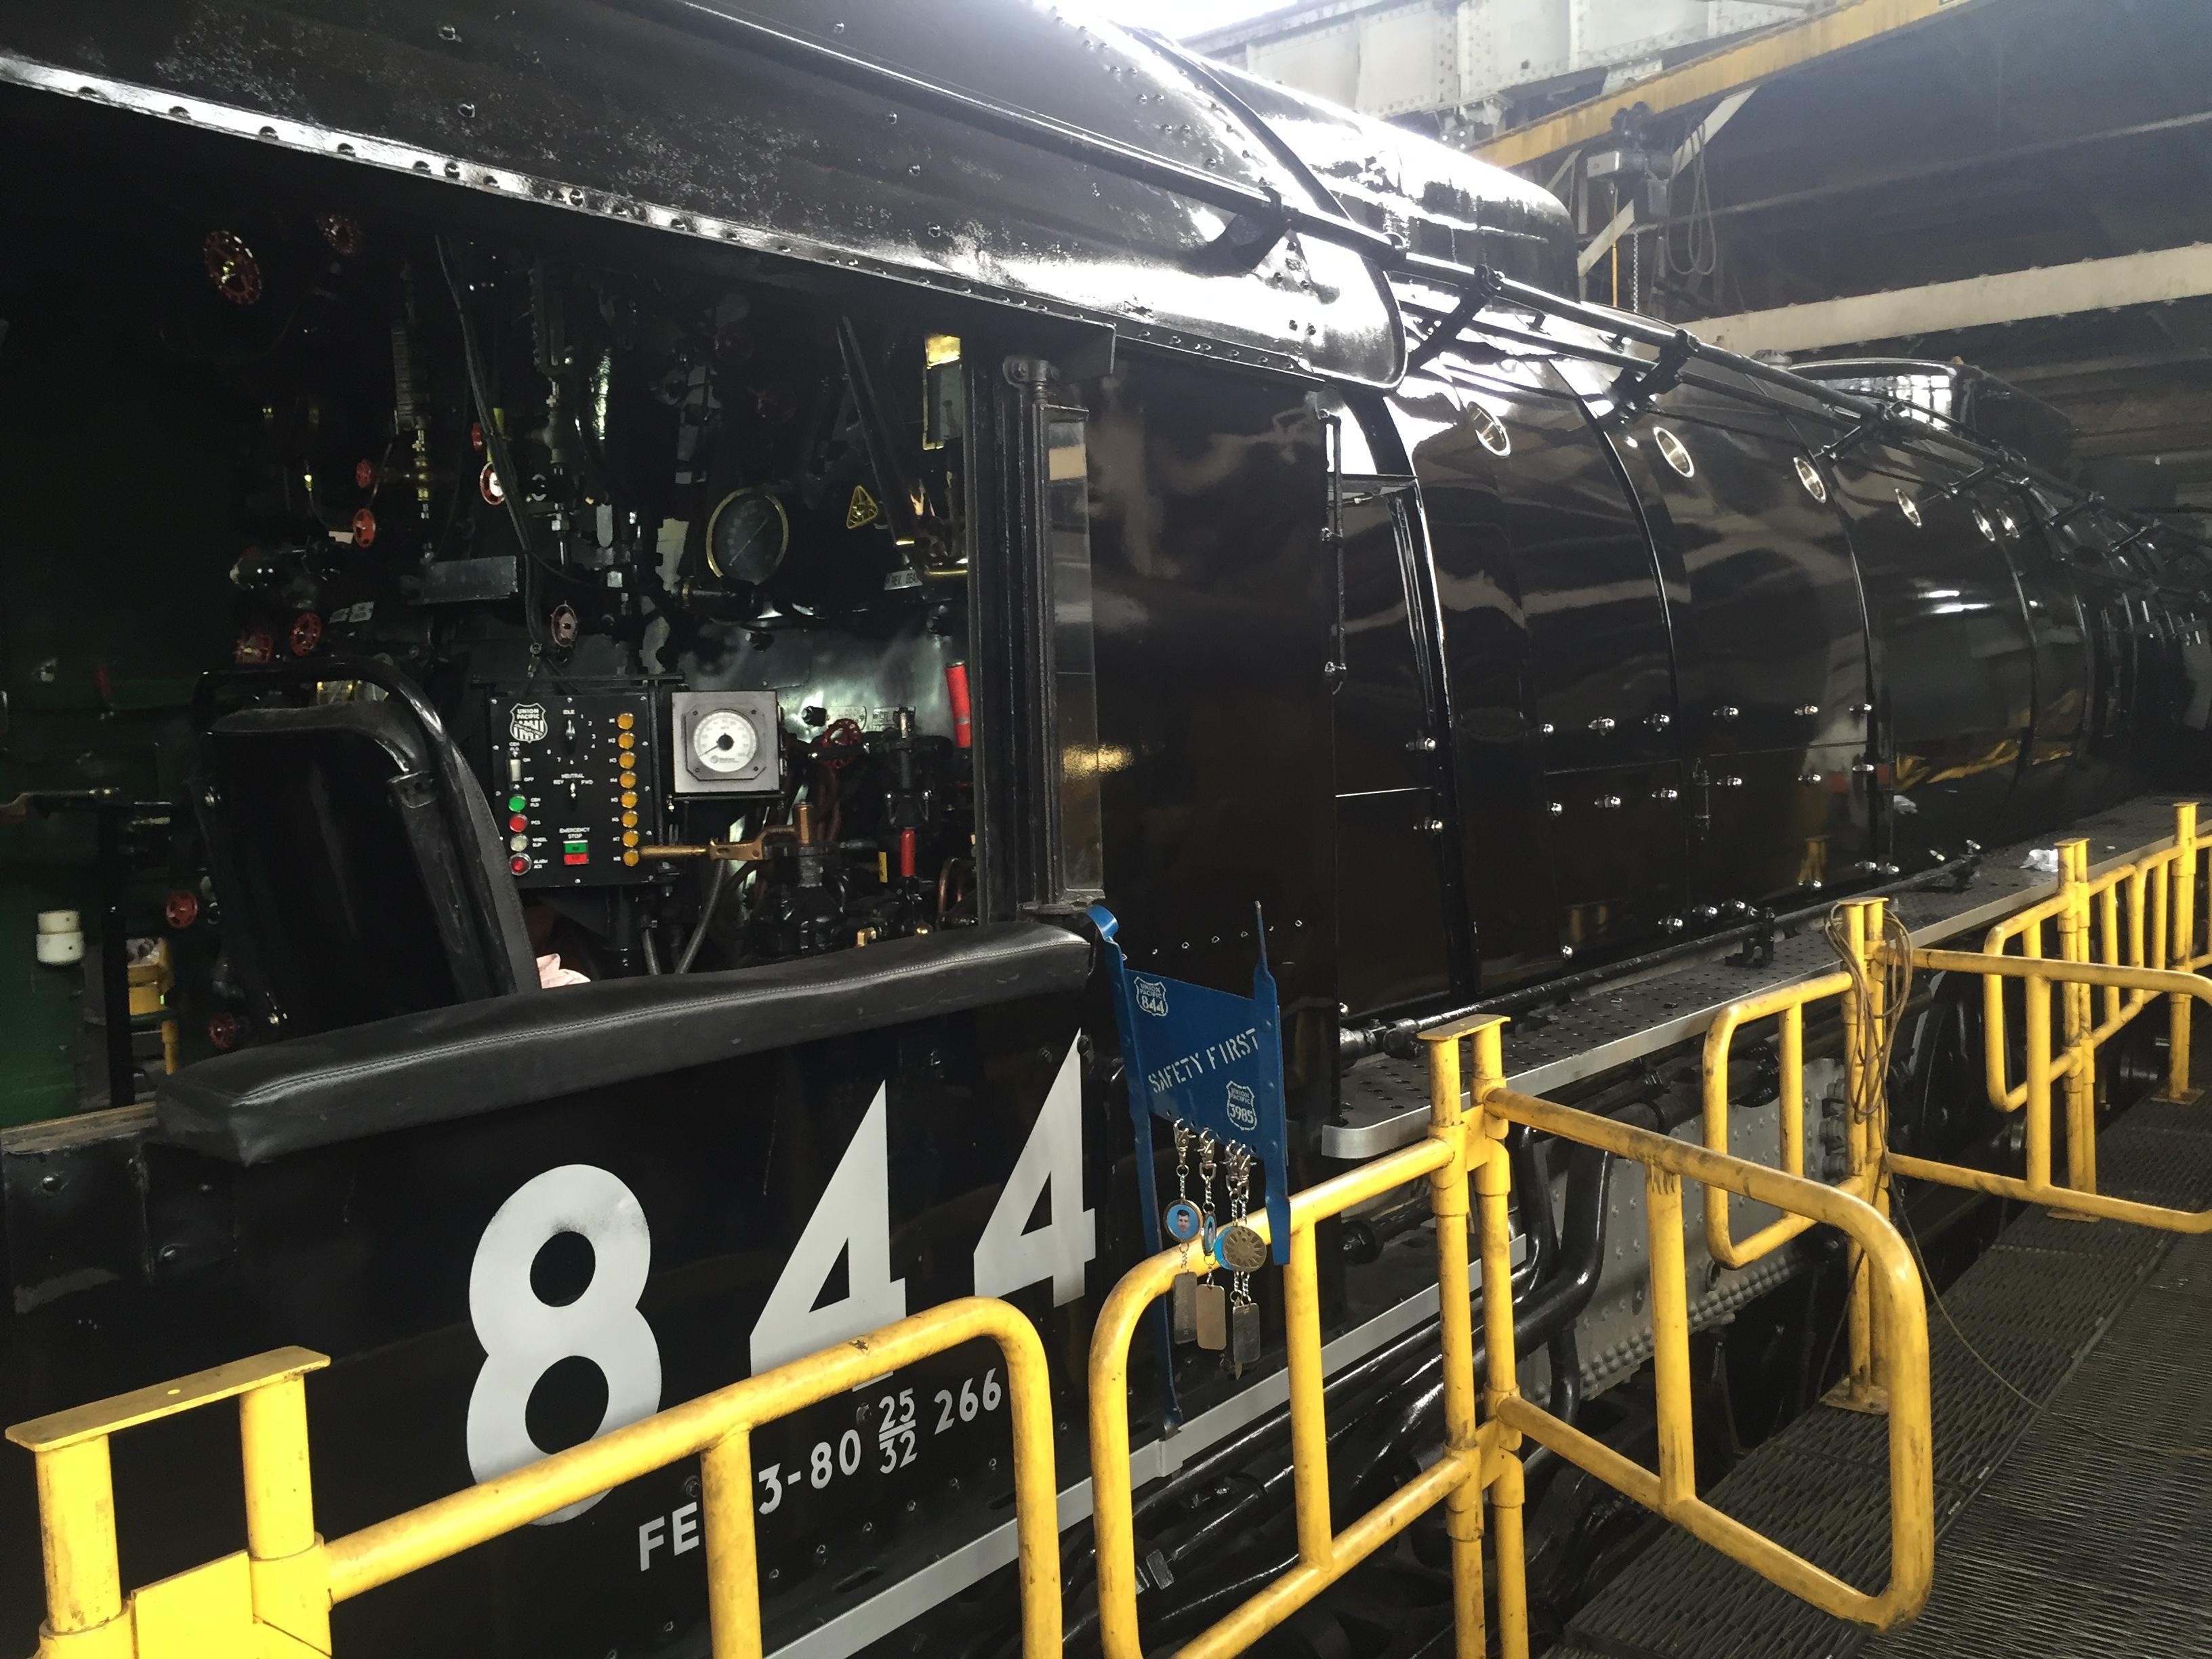 Close up of the living legend, locomotive No. 844.